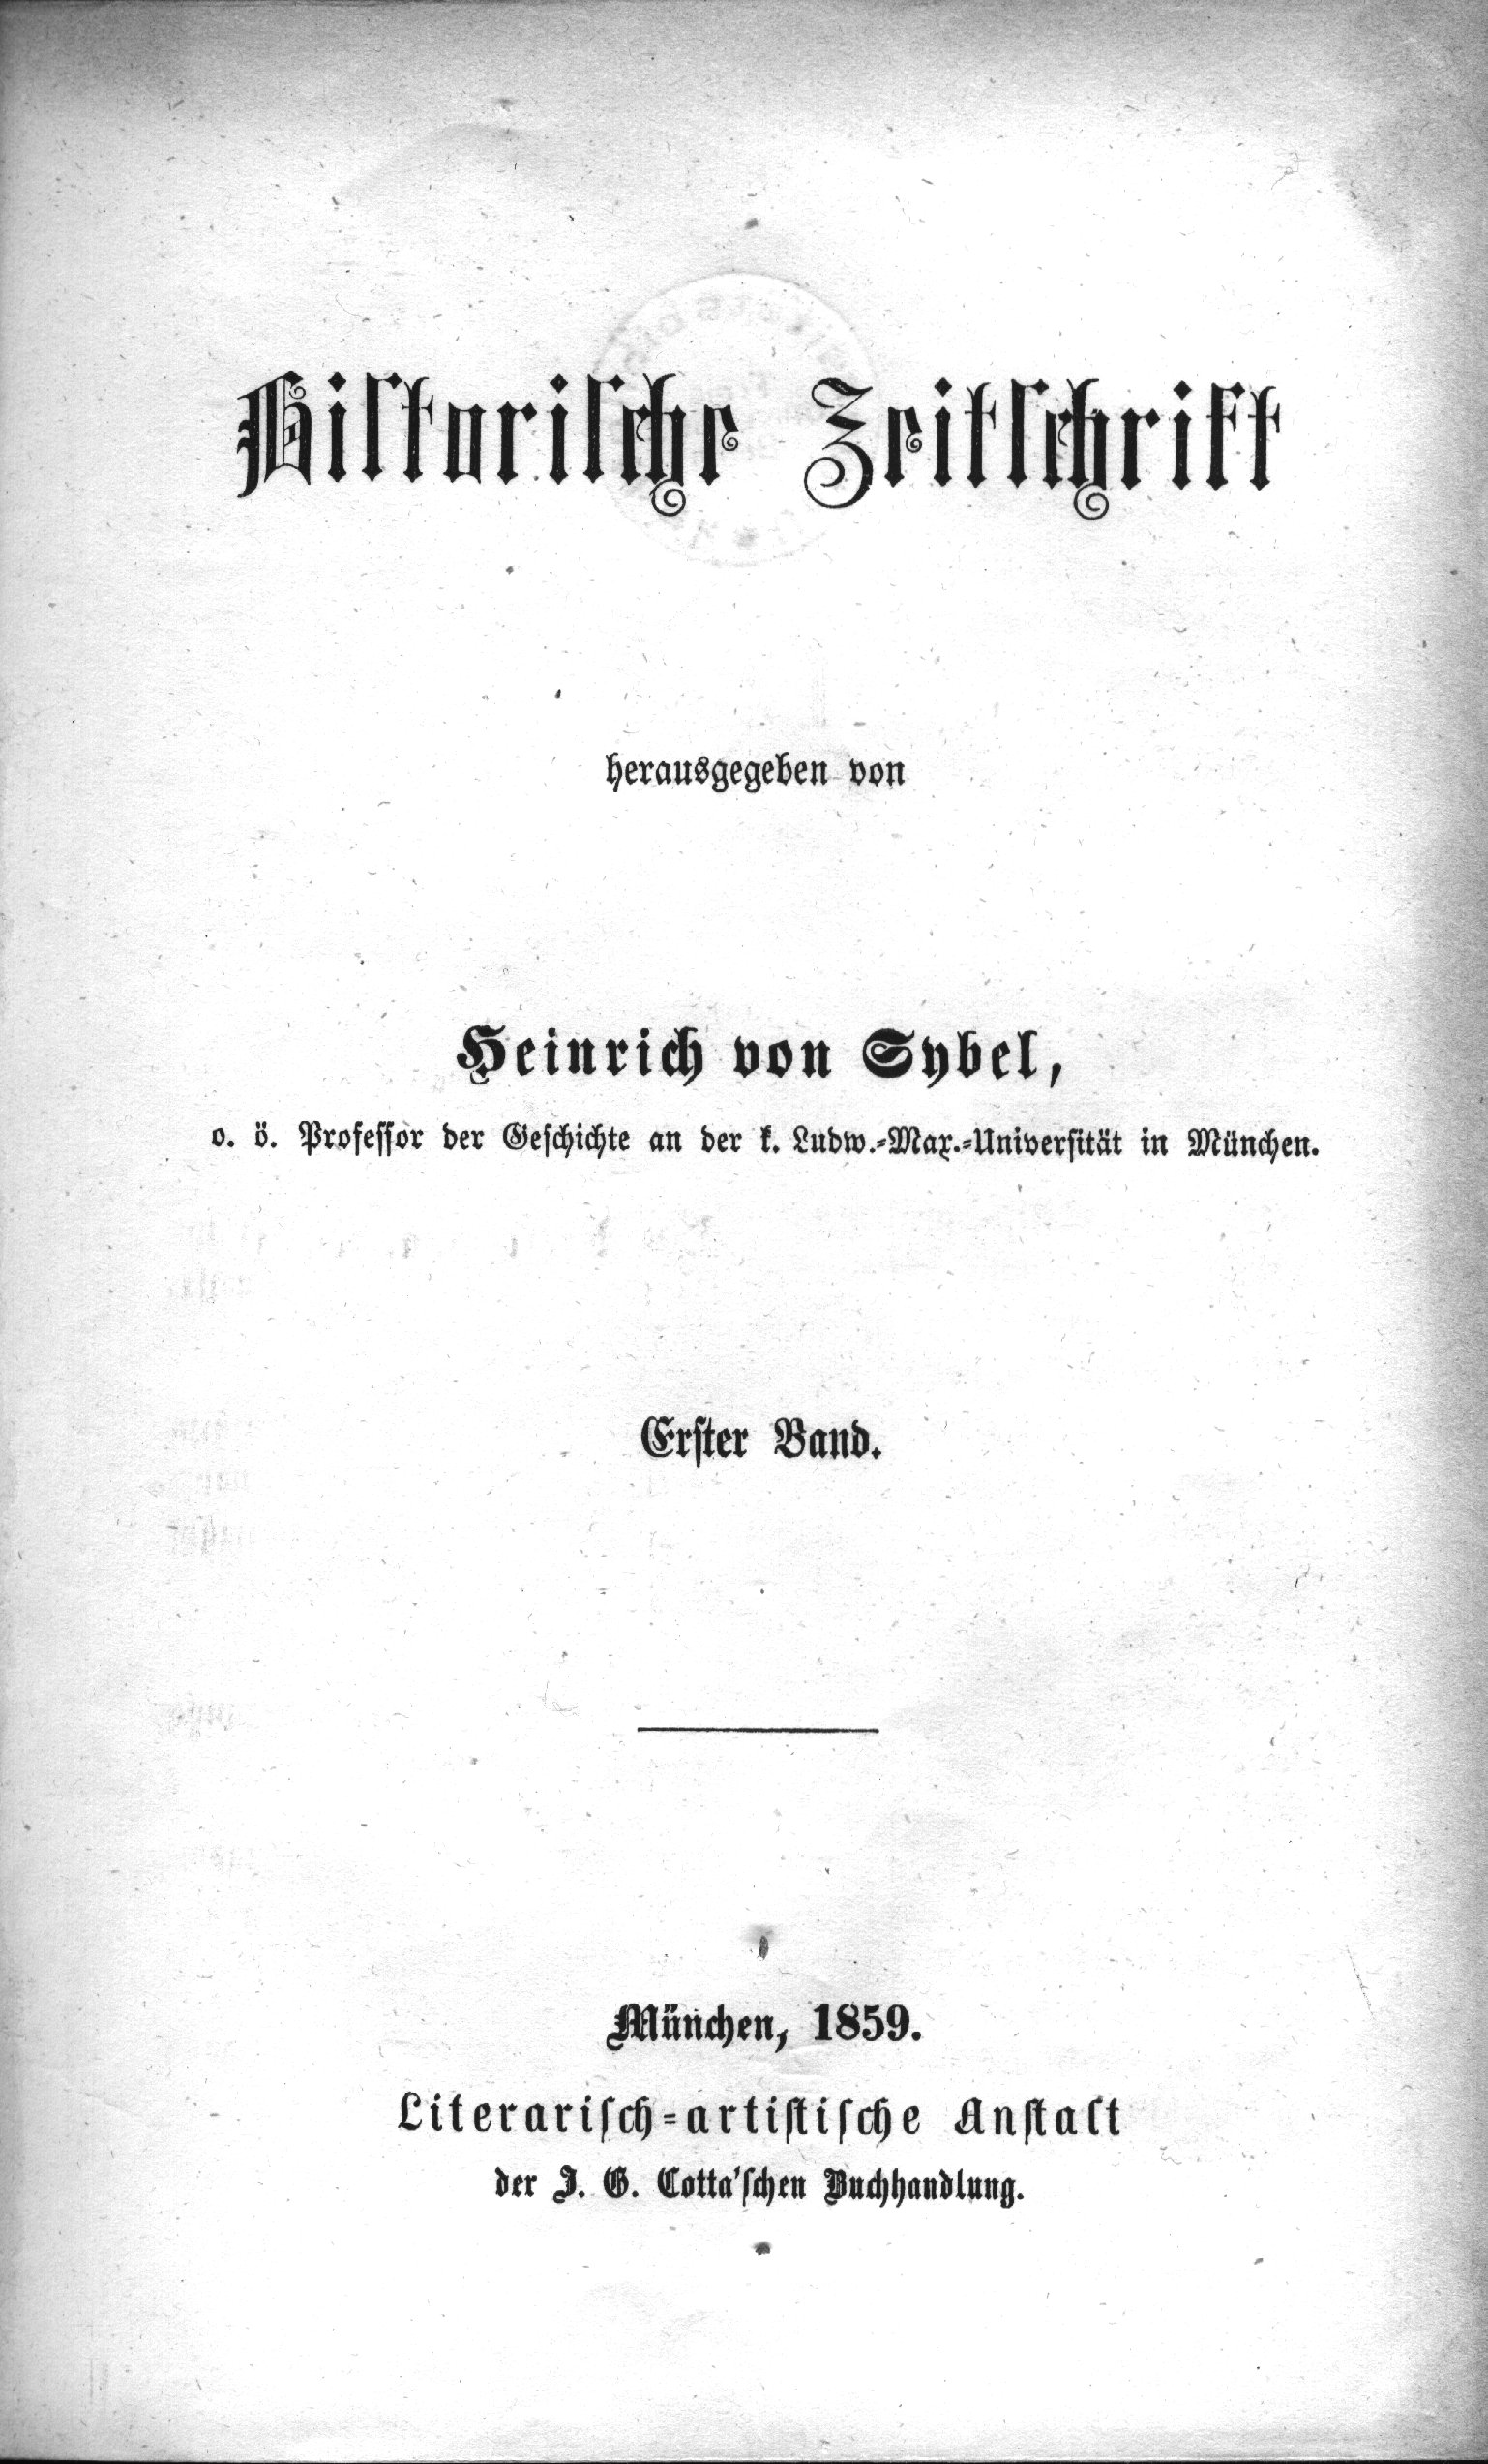 Historische Zeitschrift - Wikipedia, the.